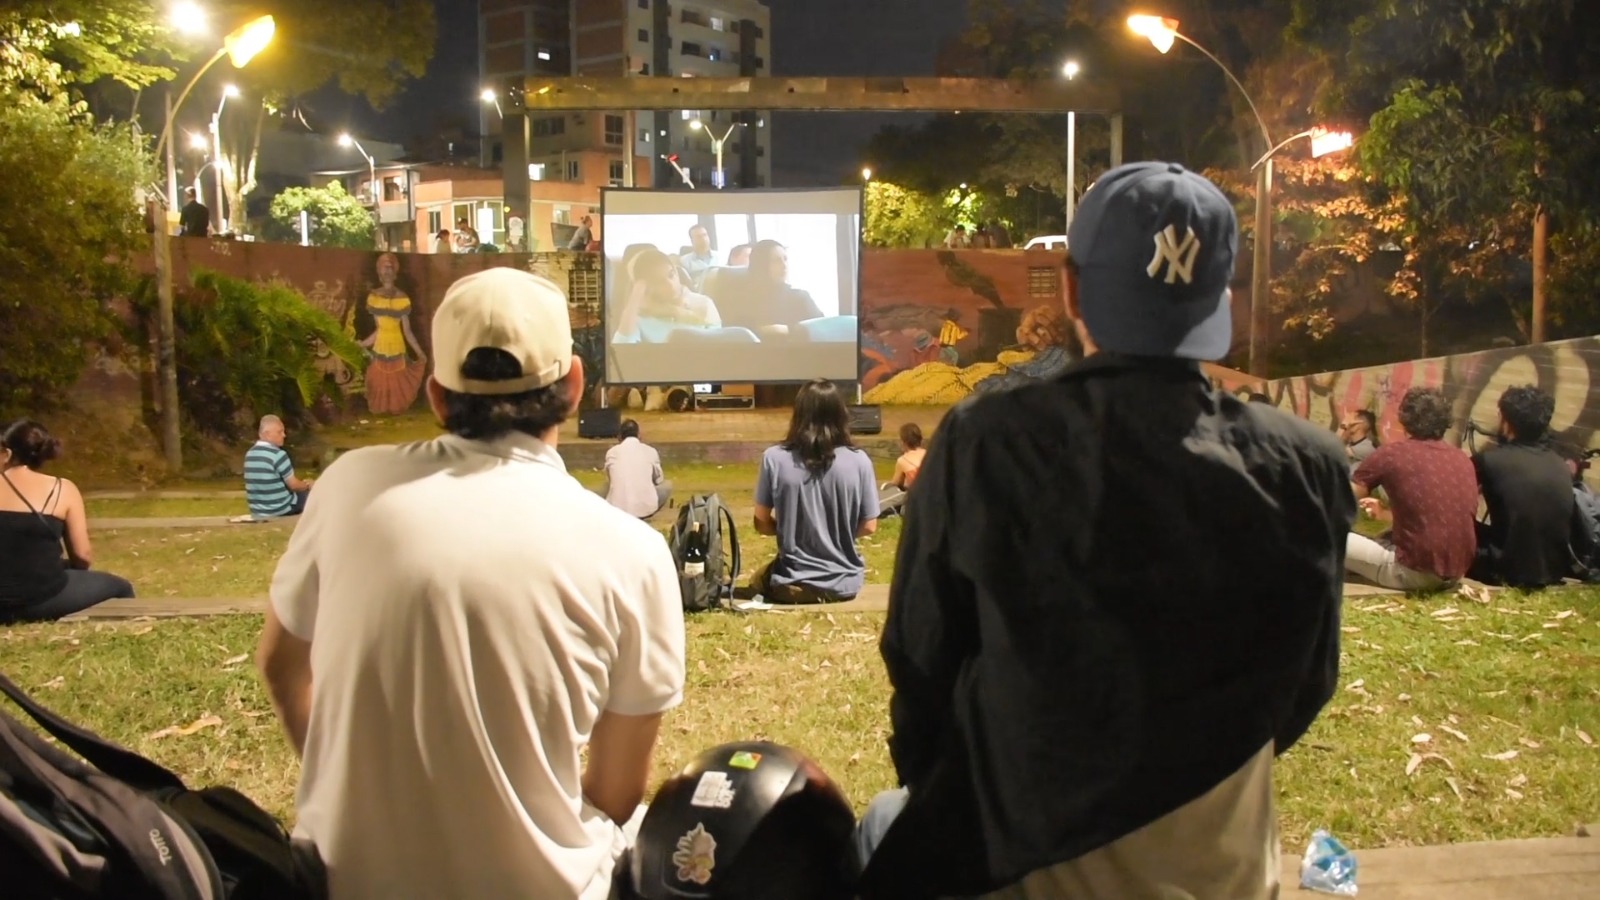 Medellín Lanza «Cine y Empanada» al Aire Libre para Revitalizar el Parque Bicentenario